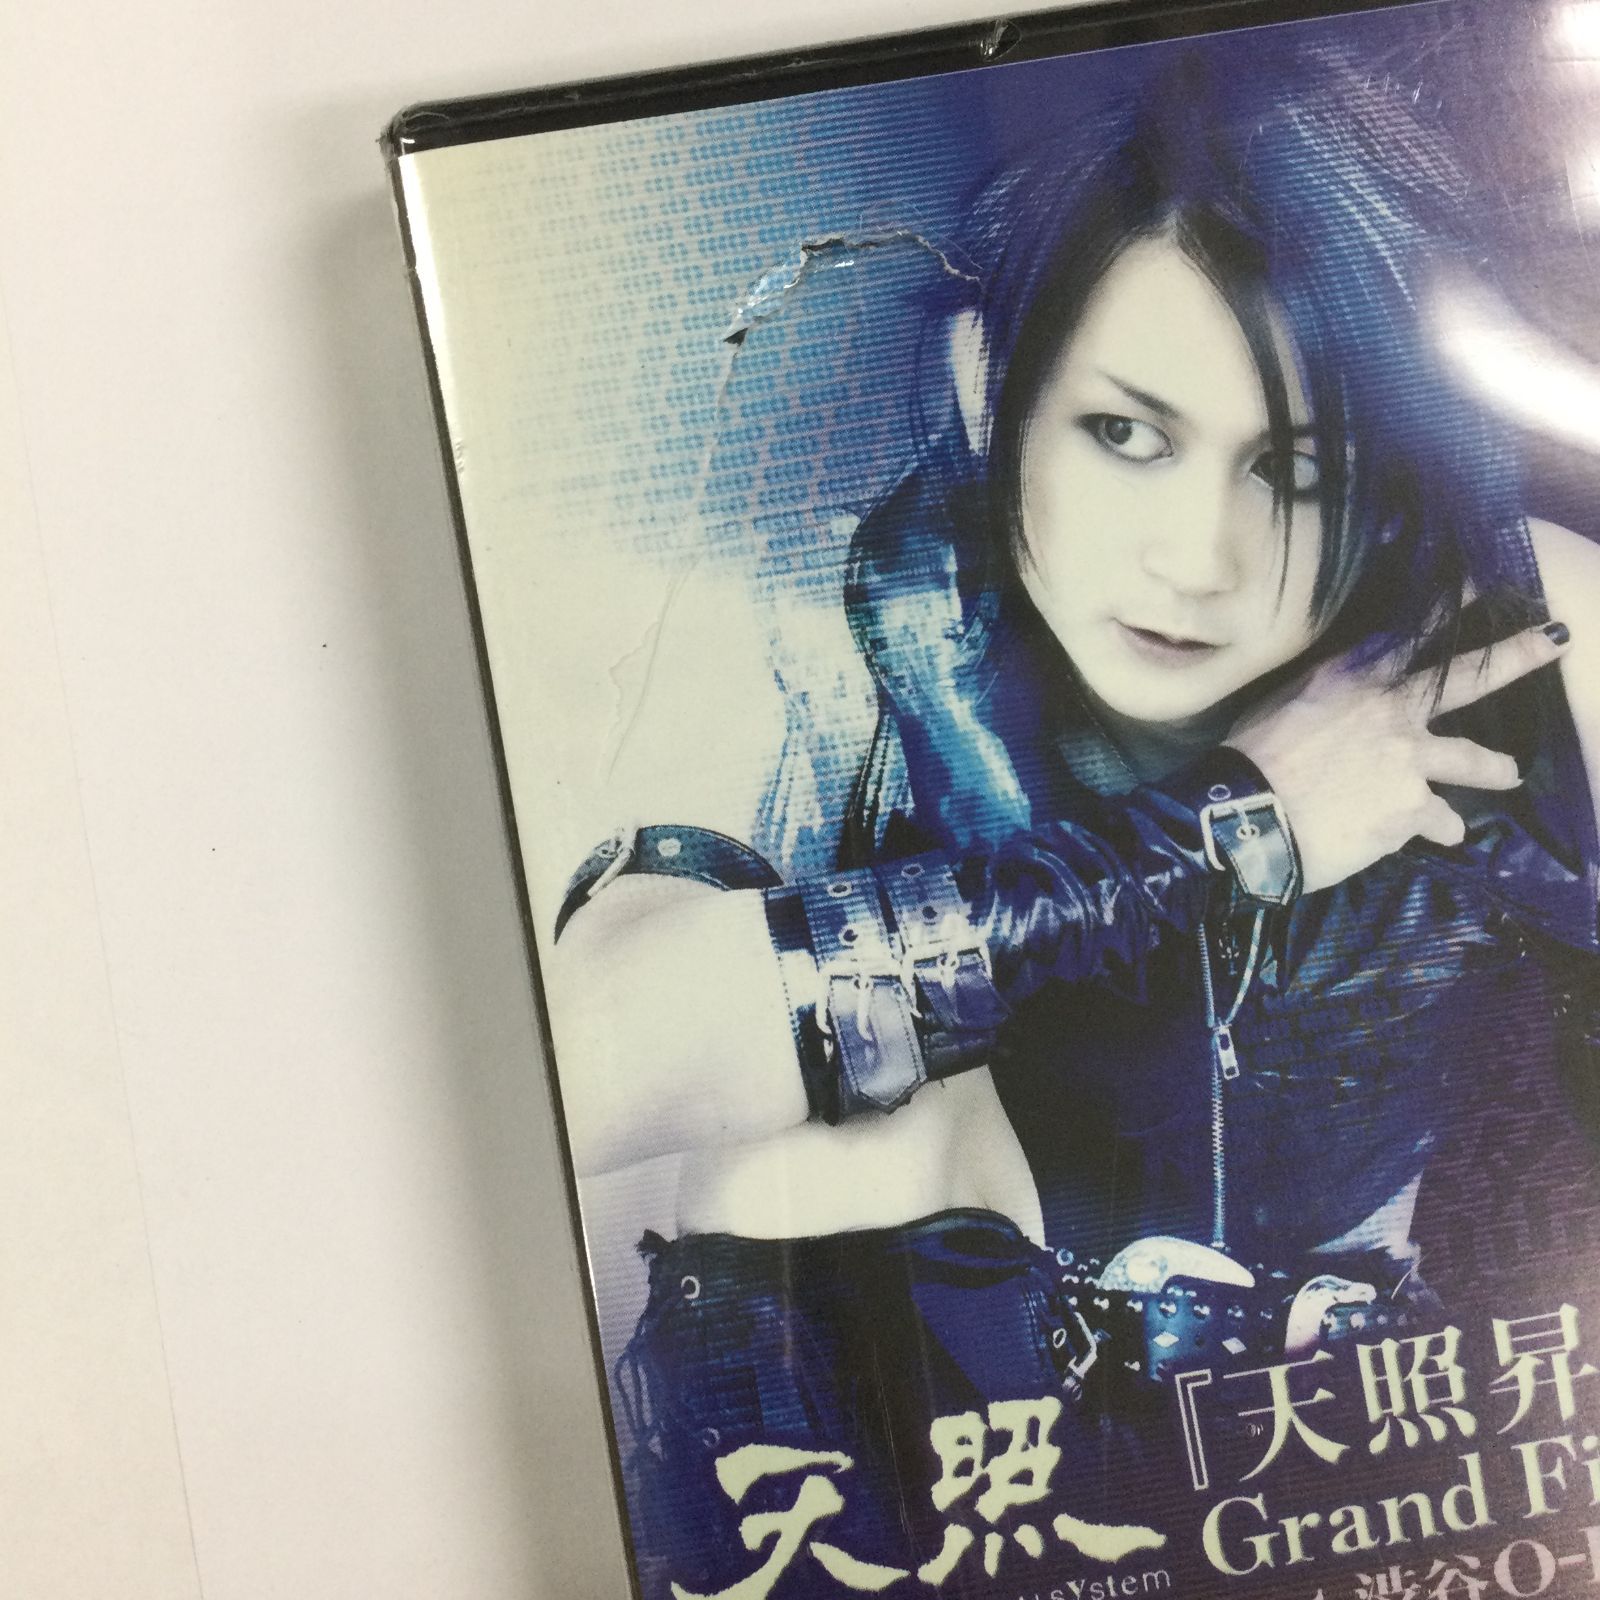 天照/天照昇華 Grand Finale 2007年1月26日 at 渋谷O-EAST [DVD]